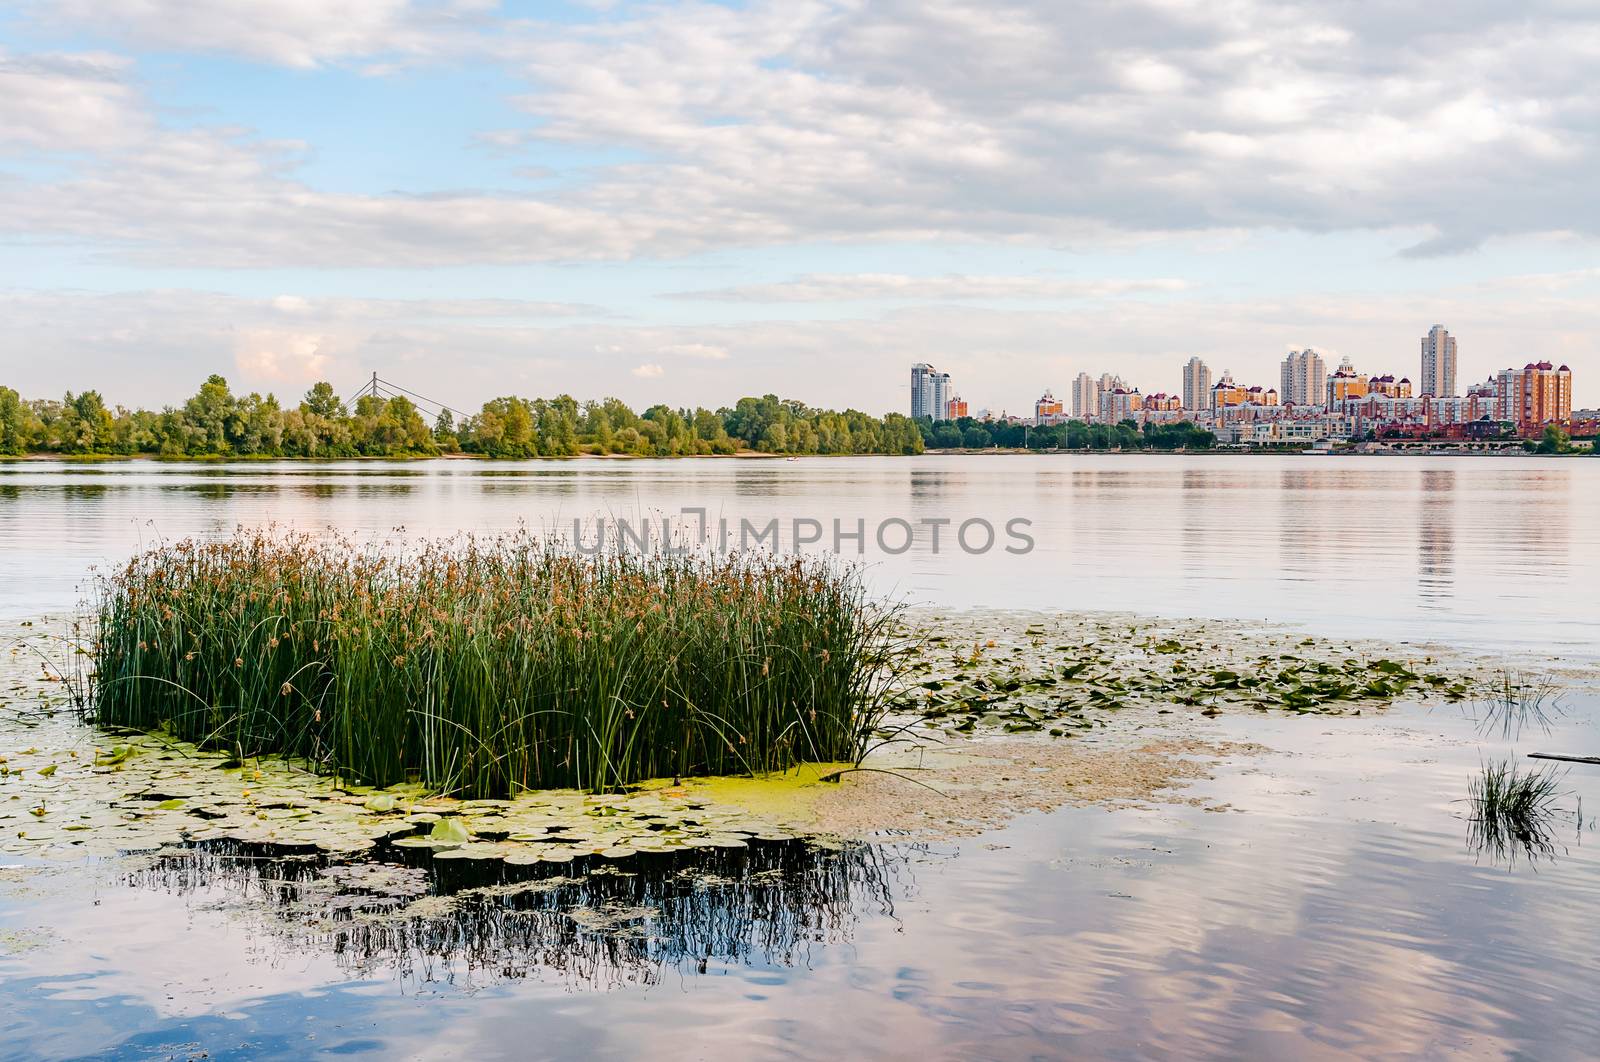 Scirpus in the Dnieper River in Kiev by MaxalTamor